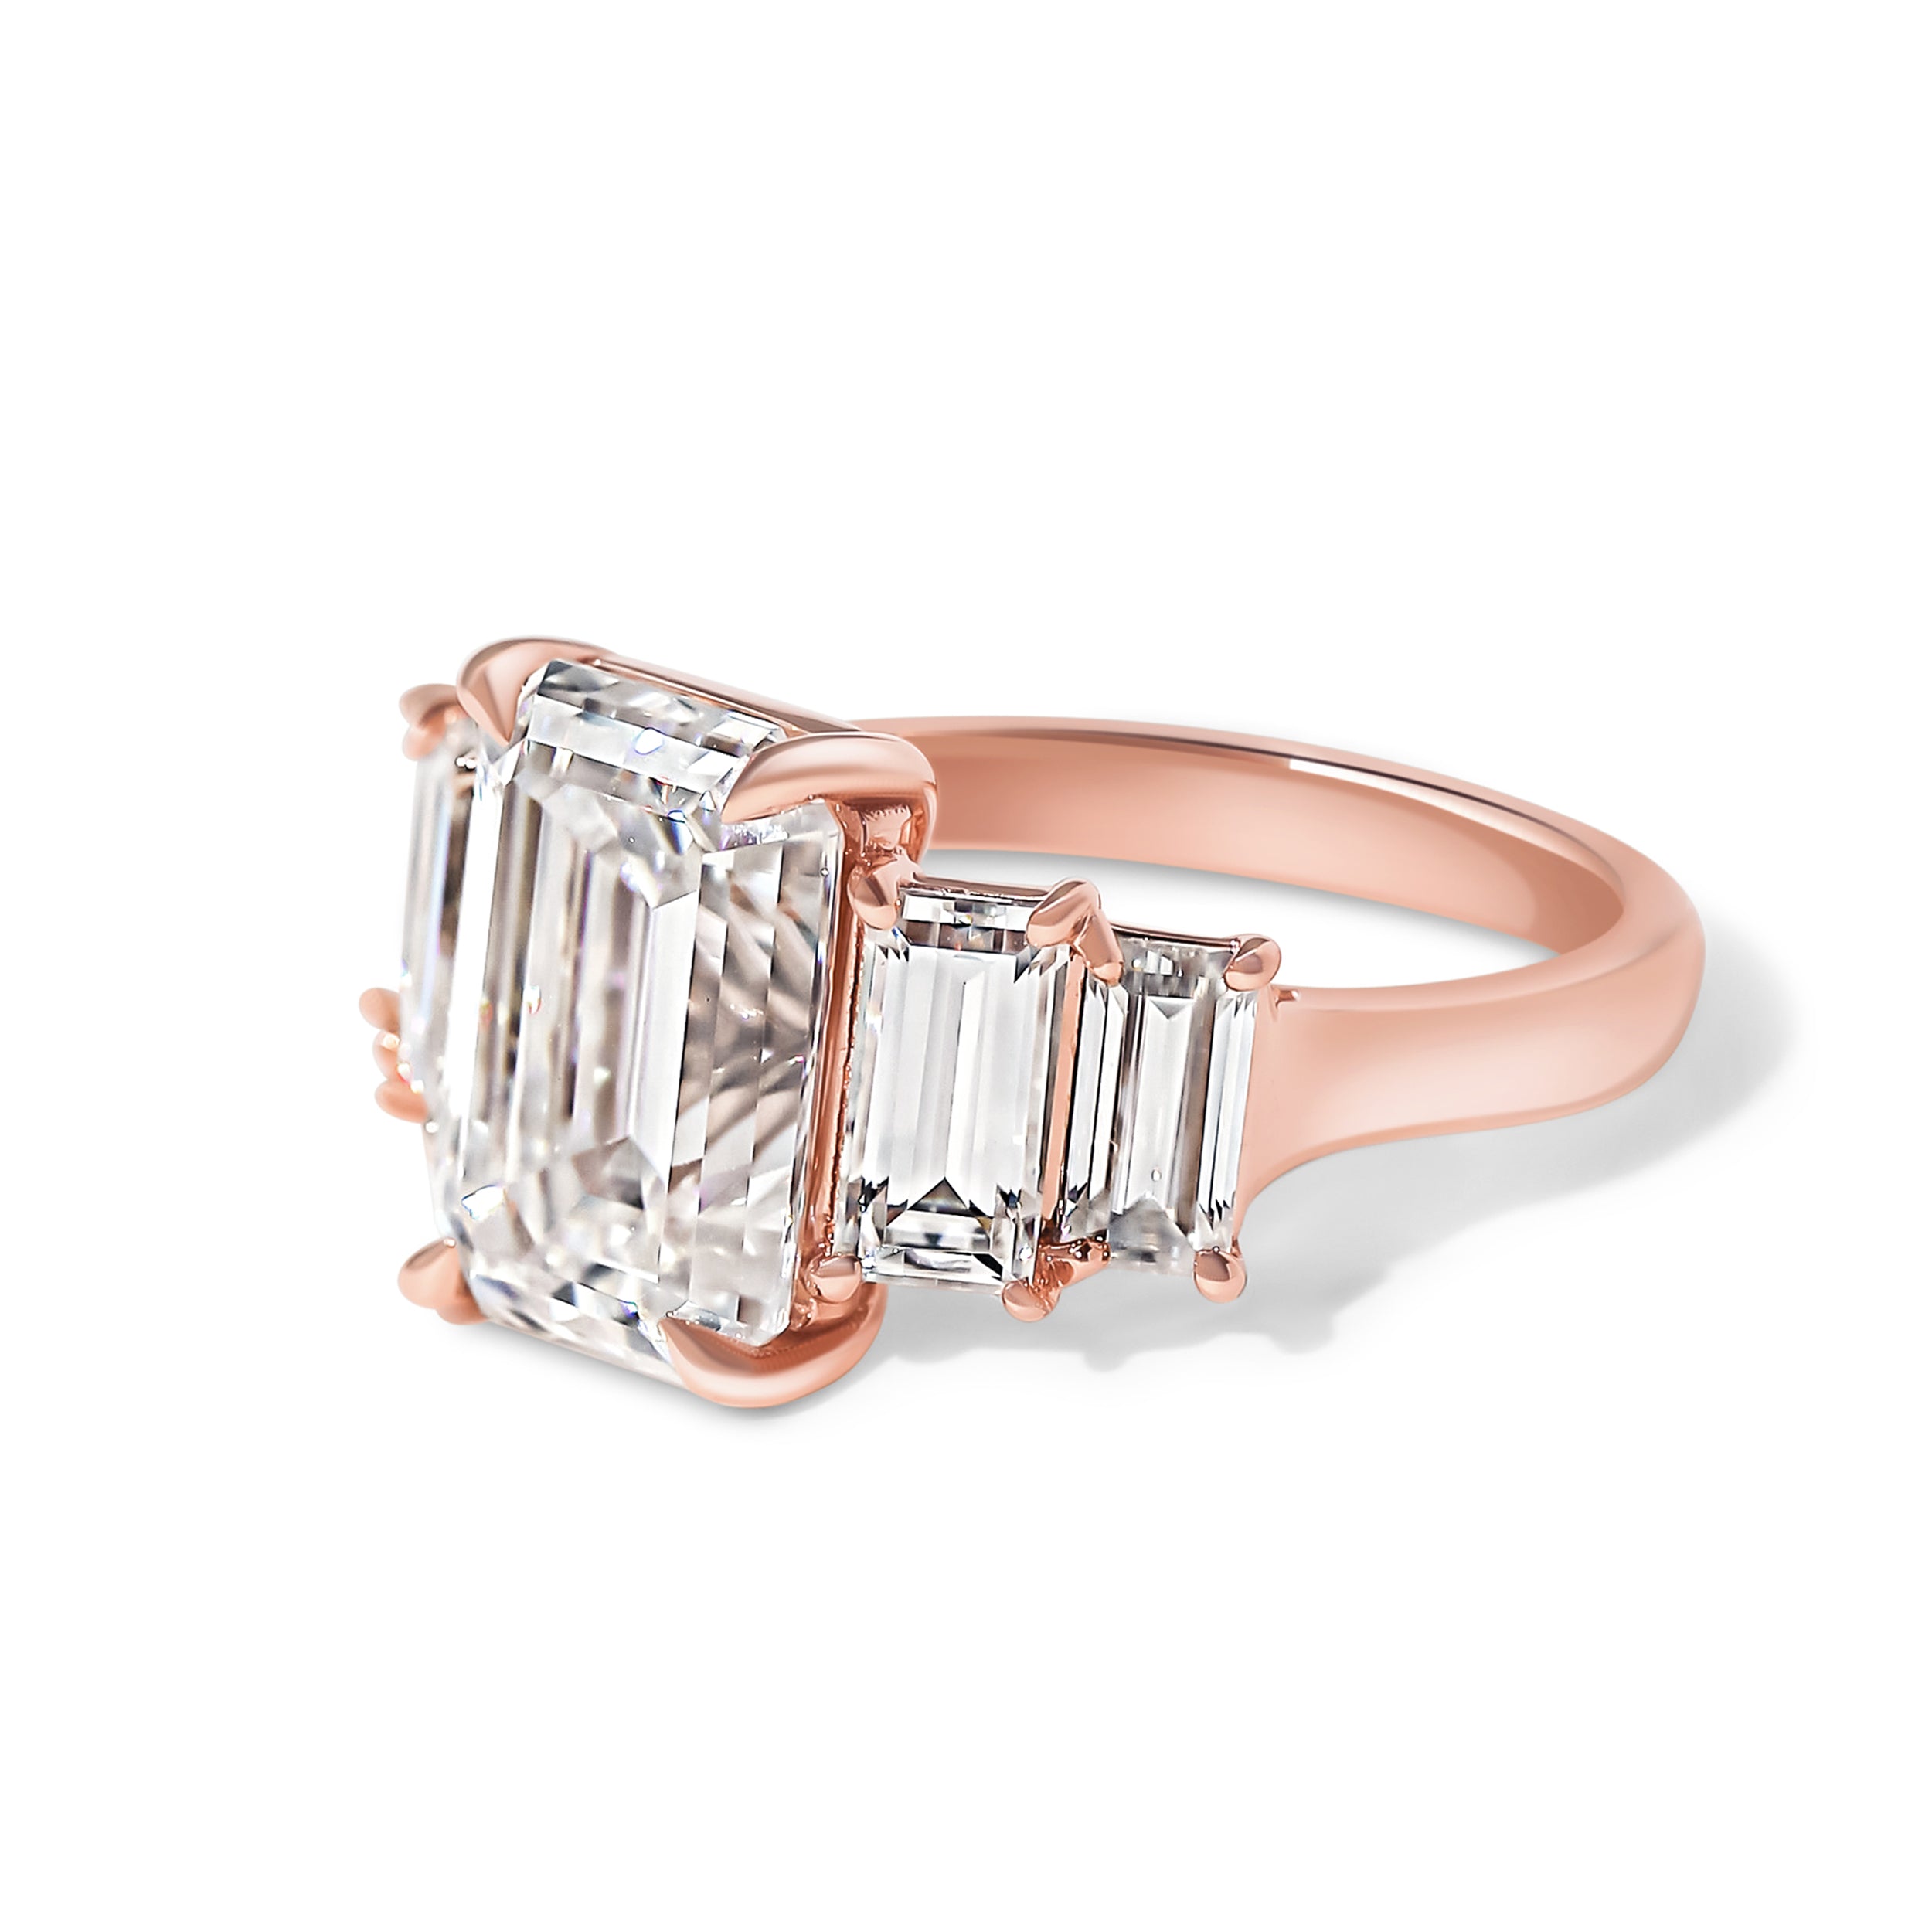 Bespoke 5 Stone Emerald Engagement Ring